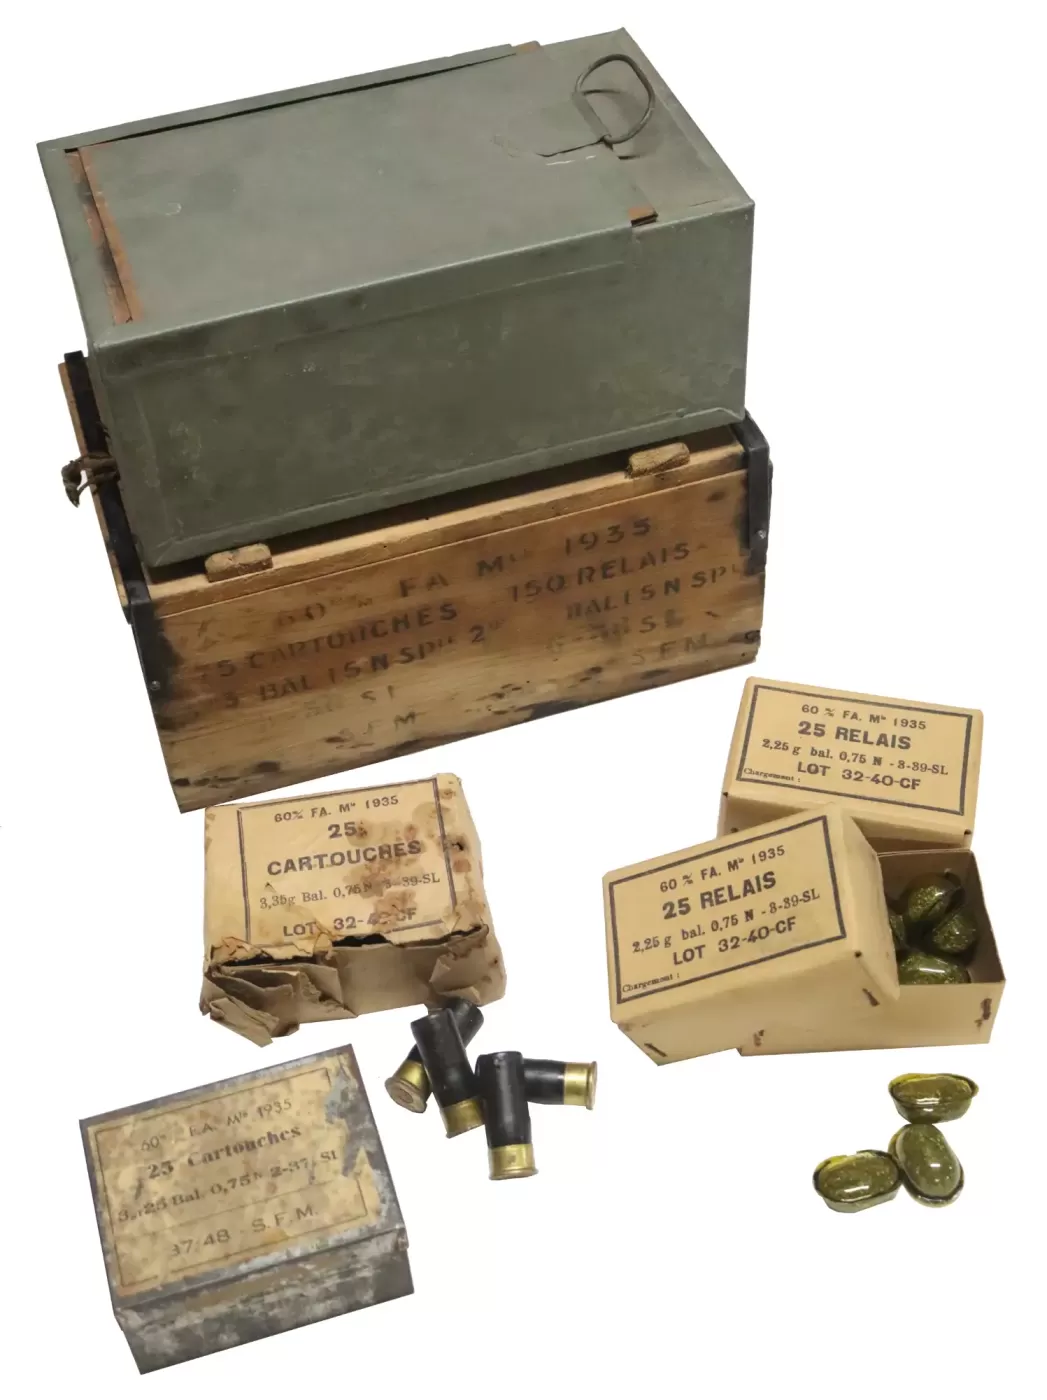 Ligne Maginot - Munition pour mortier de 60 mm FA mle 1935 (60 FA 35) - Caissette bois renfermant les cartouches et les relais